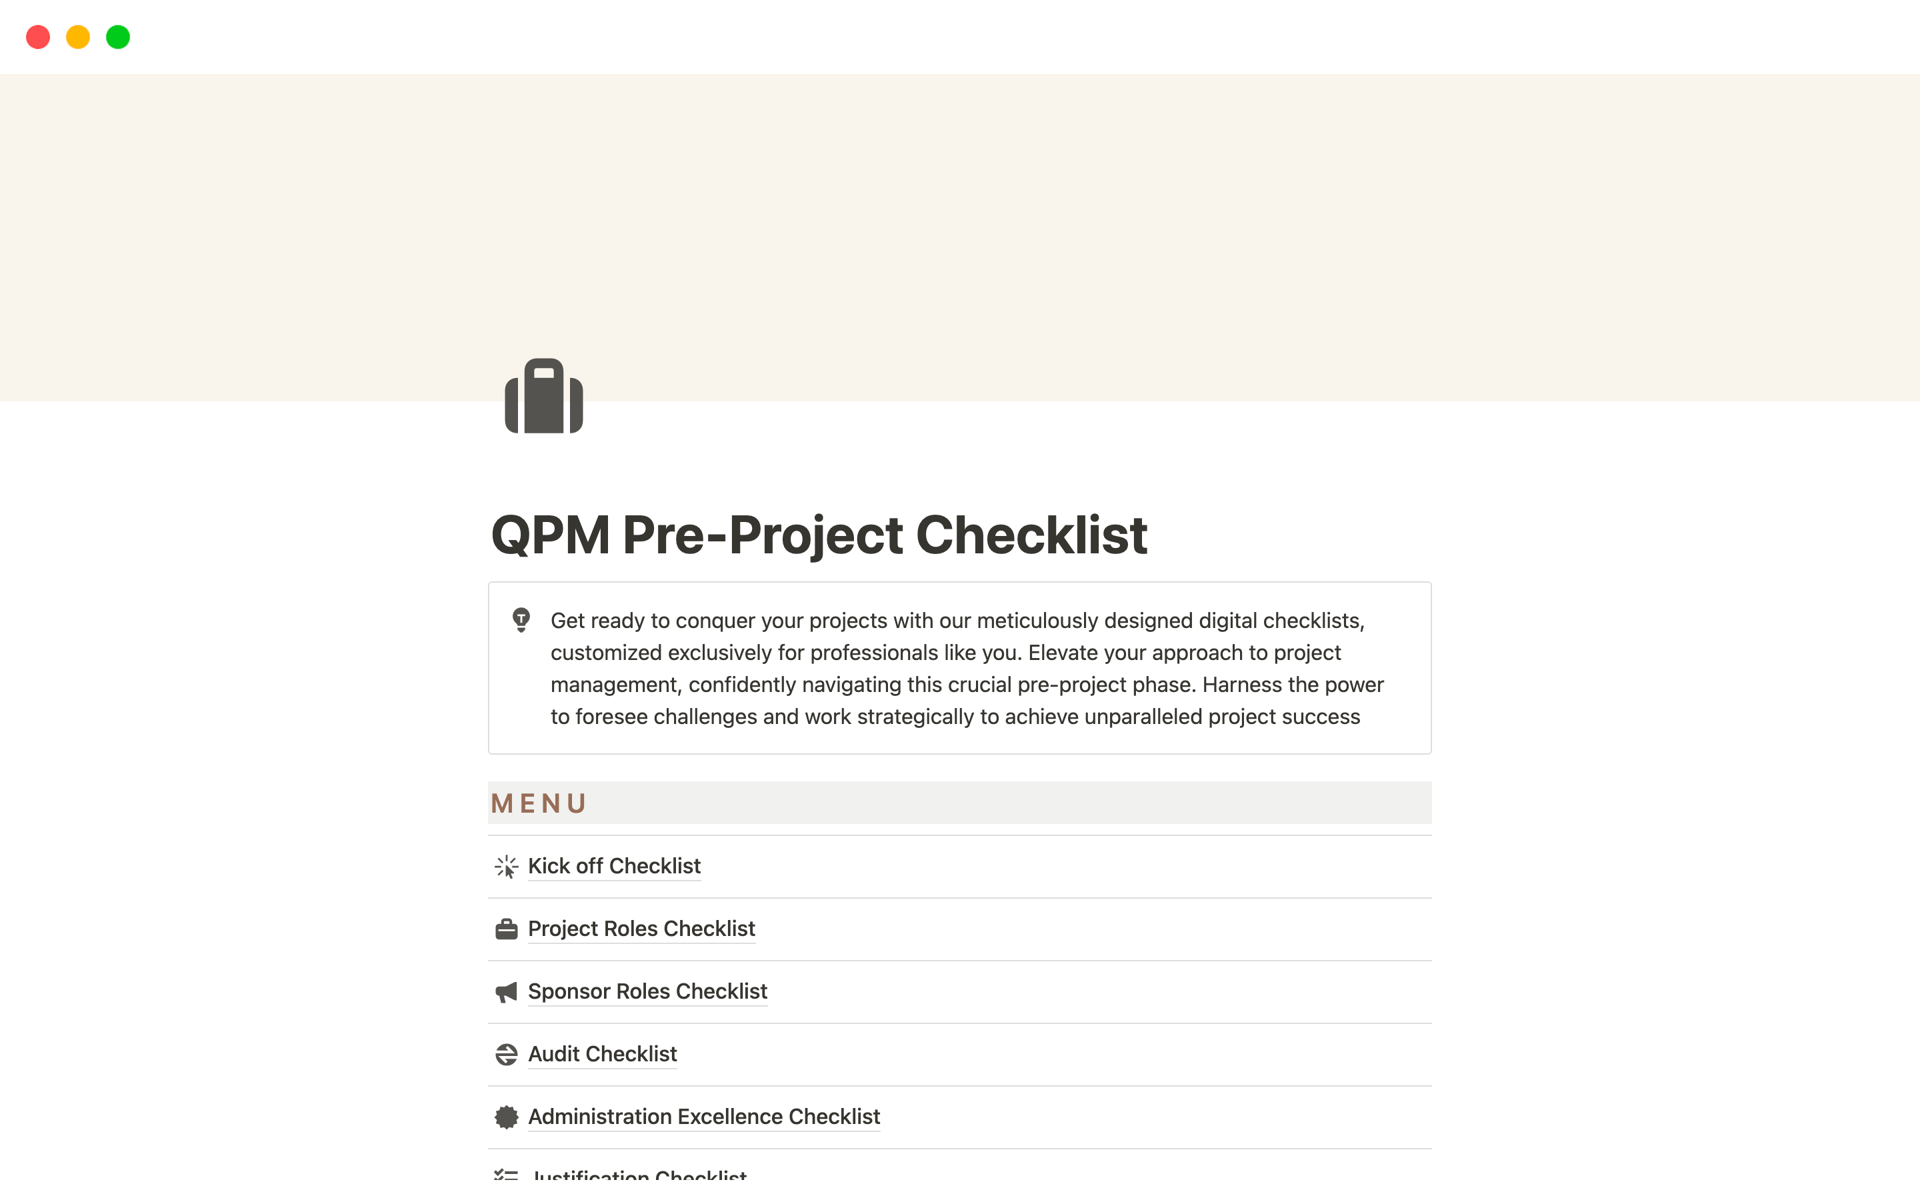 En forhåndsvisning av mal for QPM Pre-Project Checklist